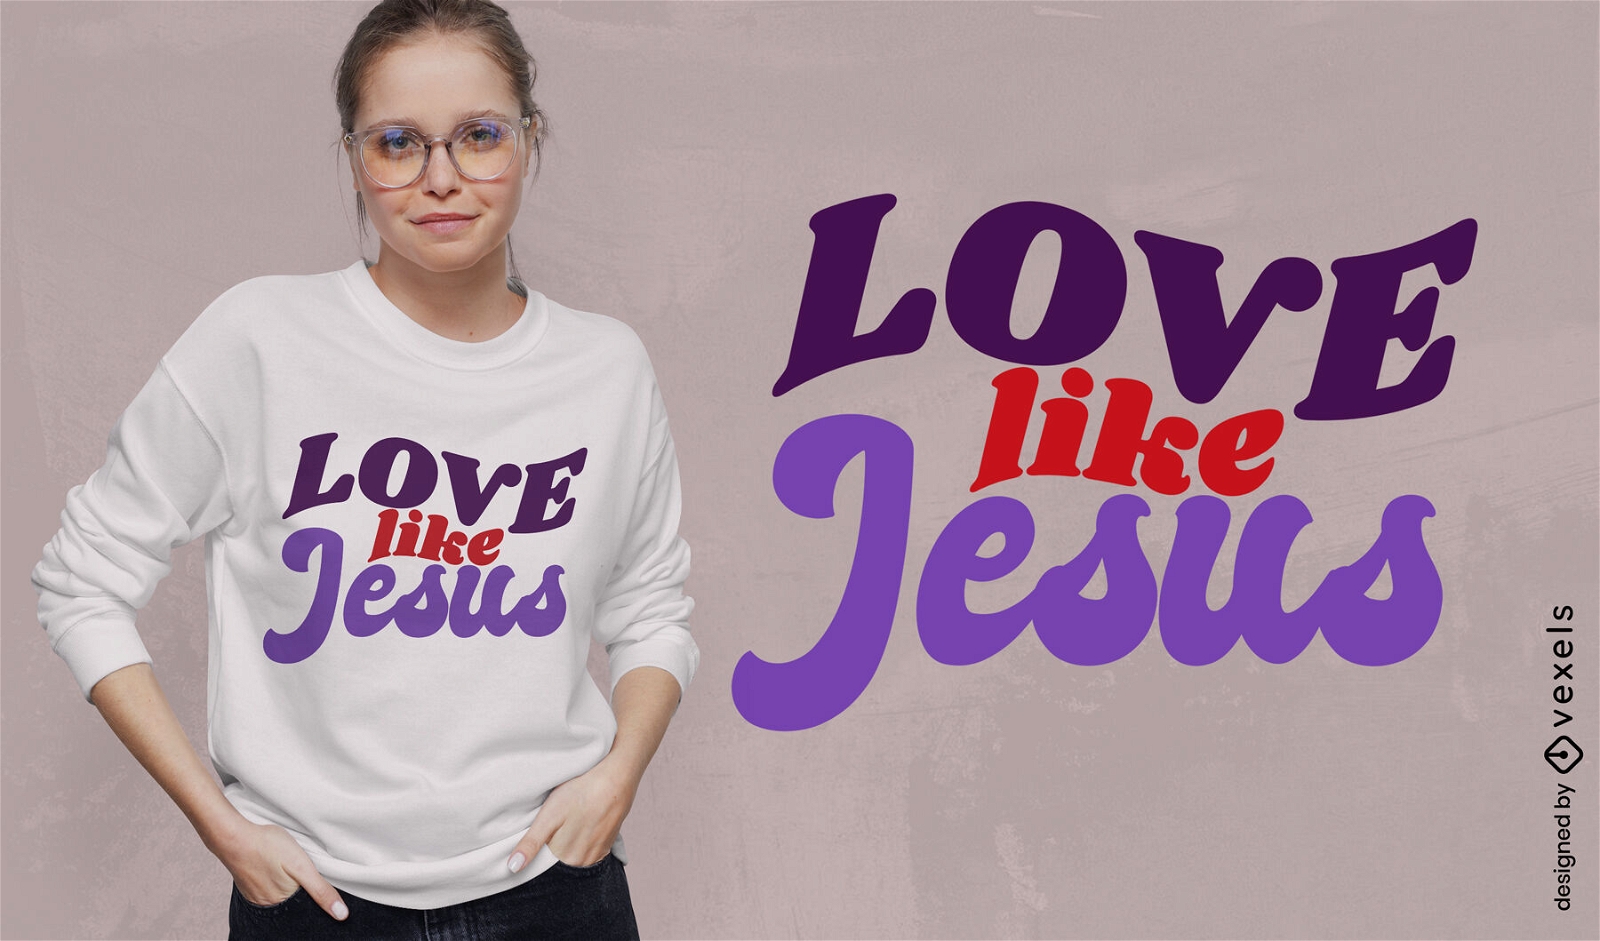 Diseño de camiseta amor como jesús